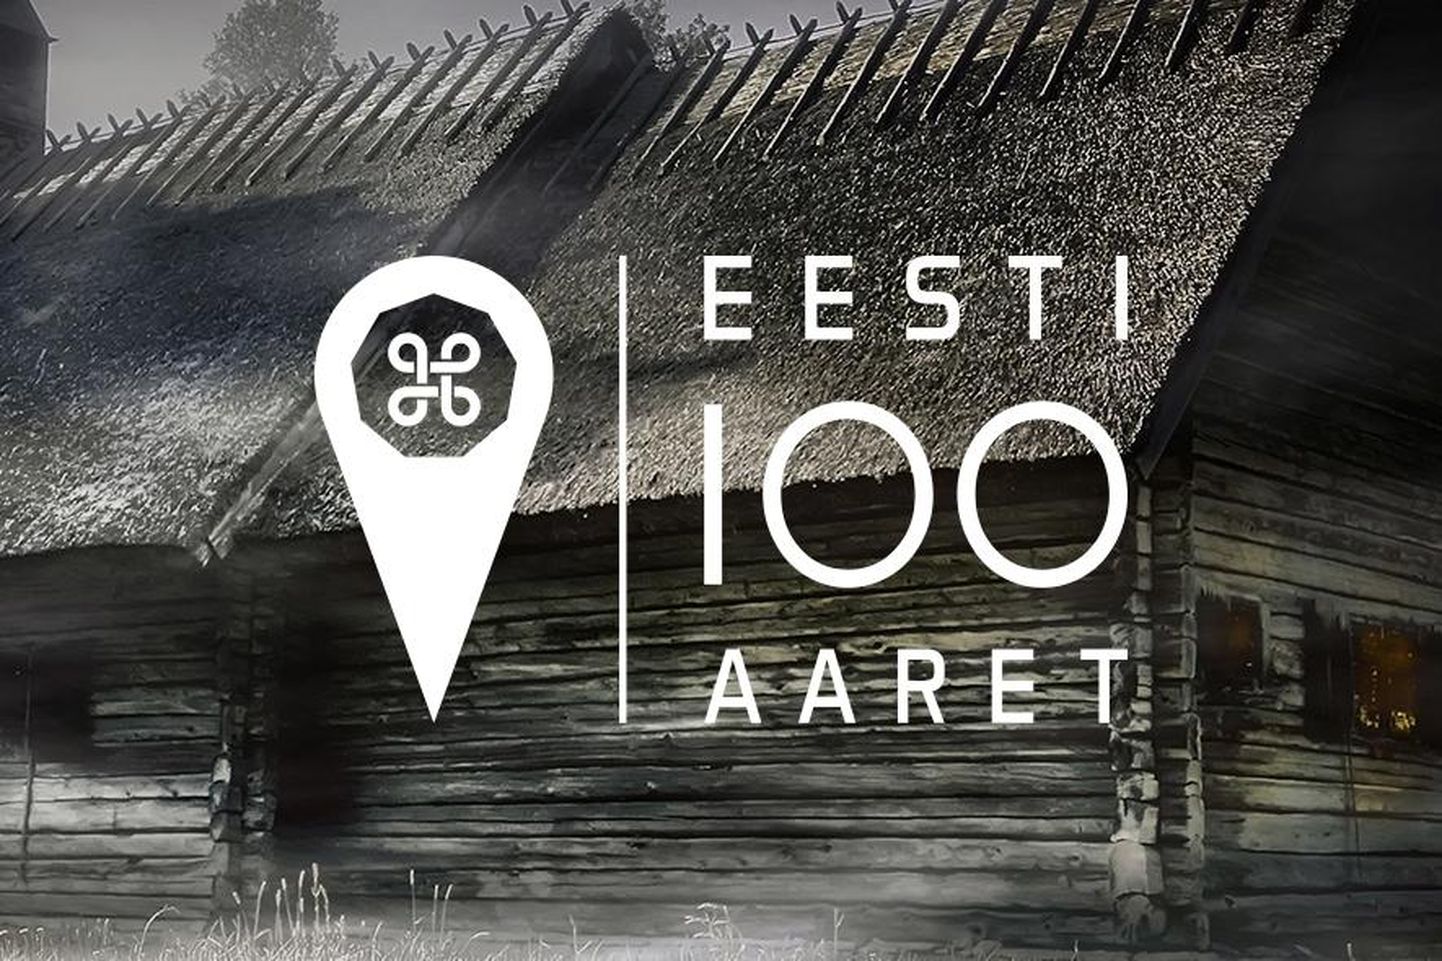 Algab seiklusmäng ”Eesti 100 aaret”.